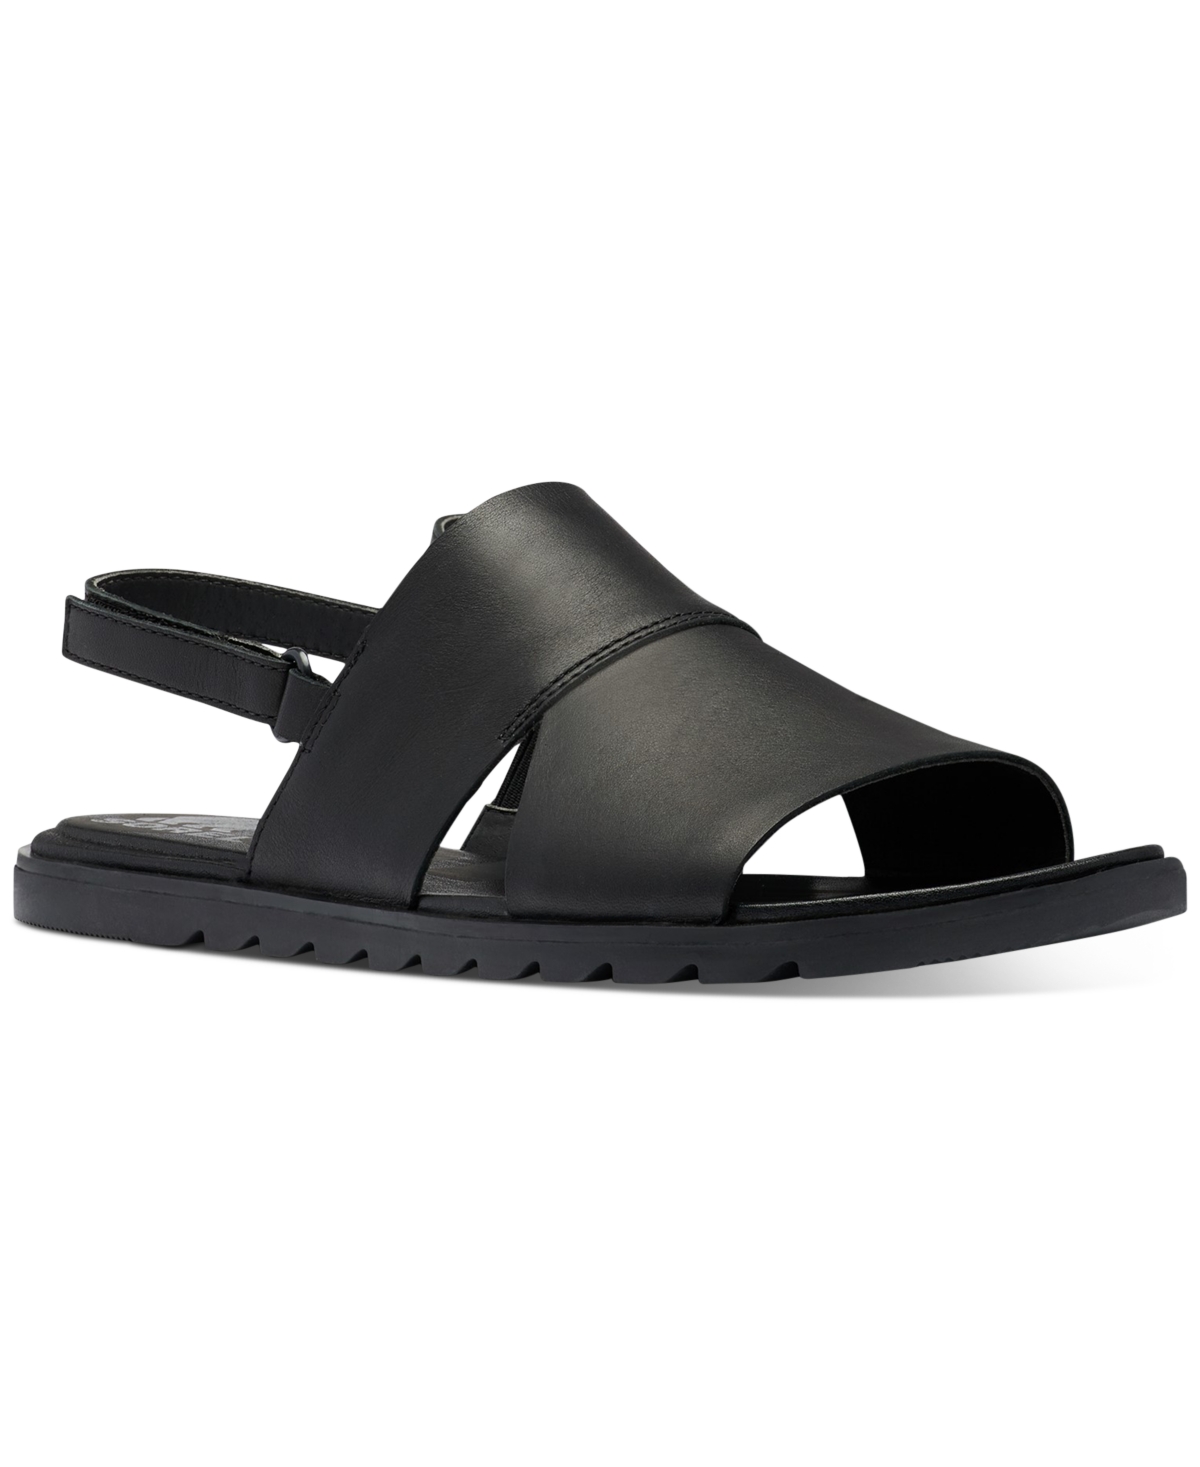 Size 8 SOREL Ella II Slingback Sandal in Black White at Nordstrom, Size 8